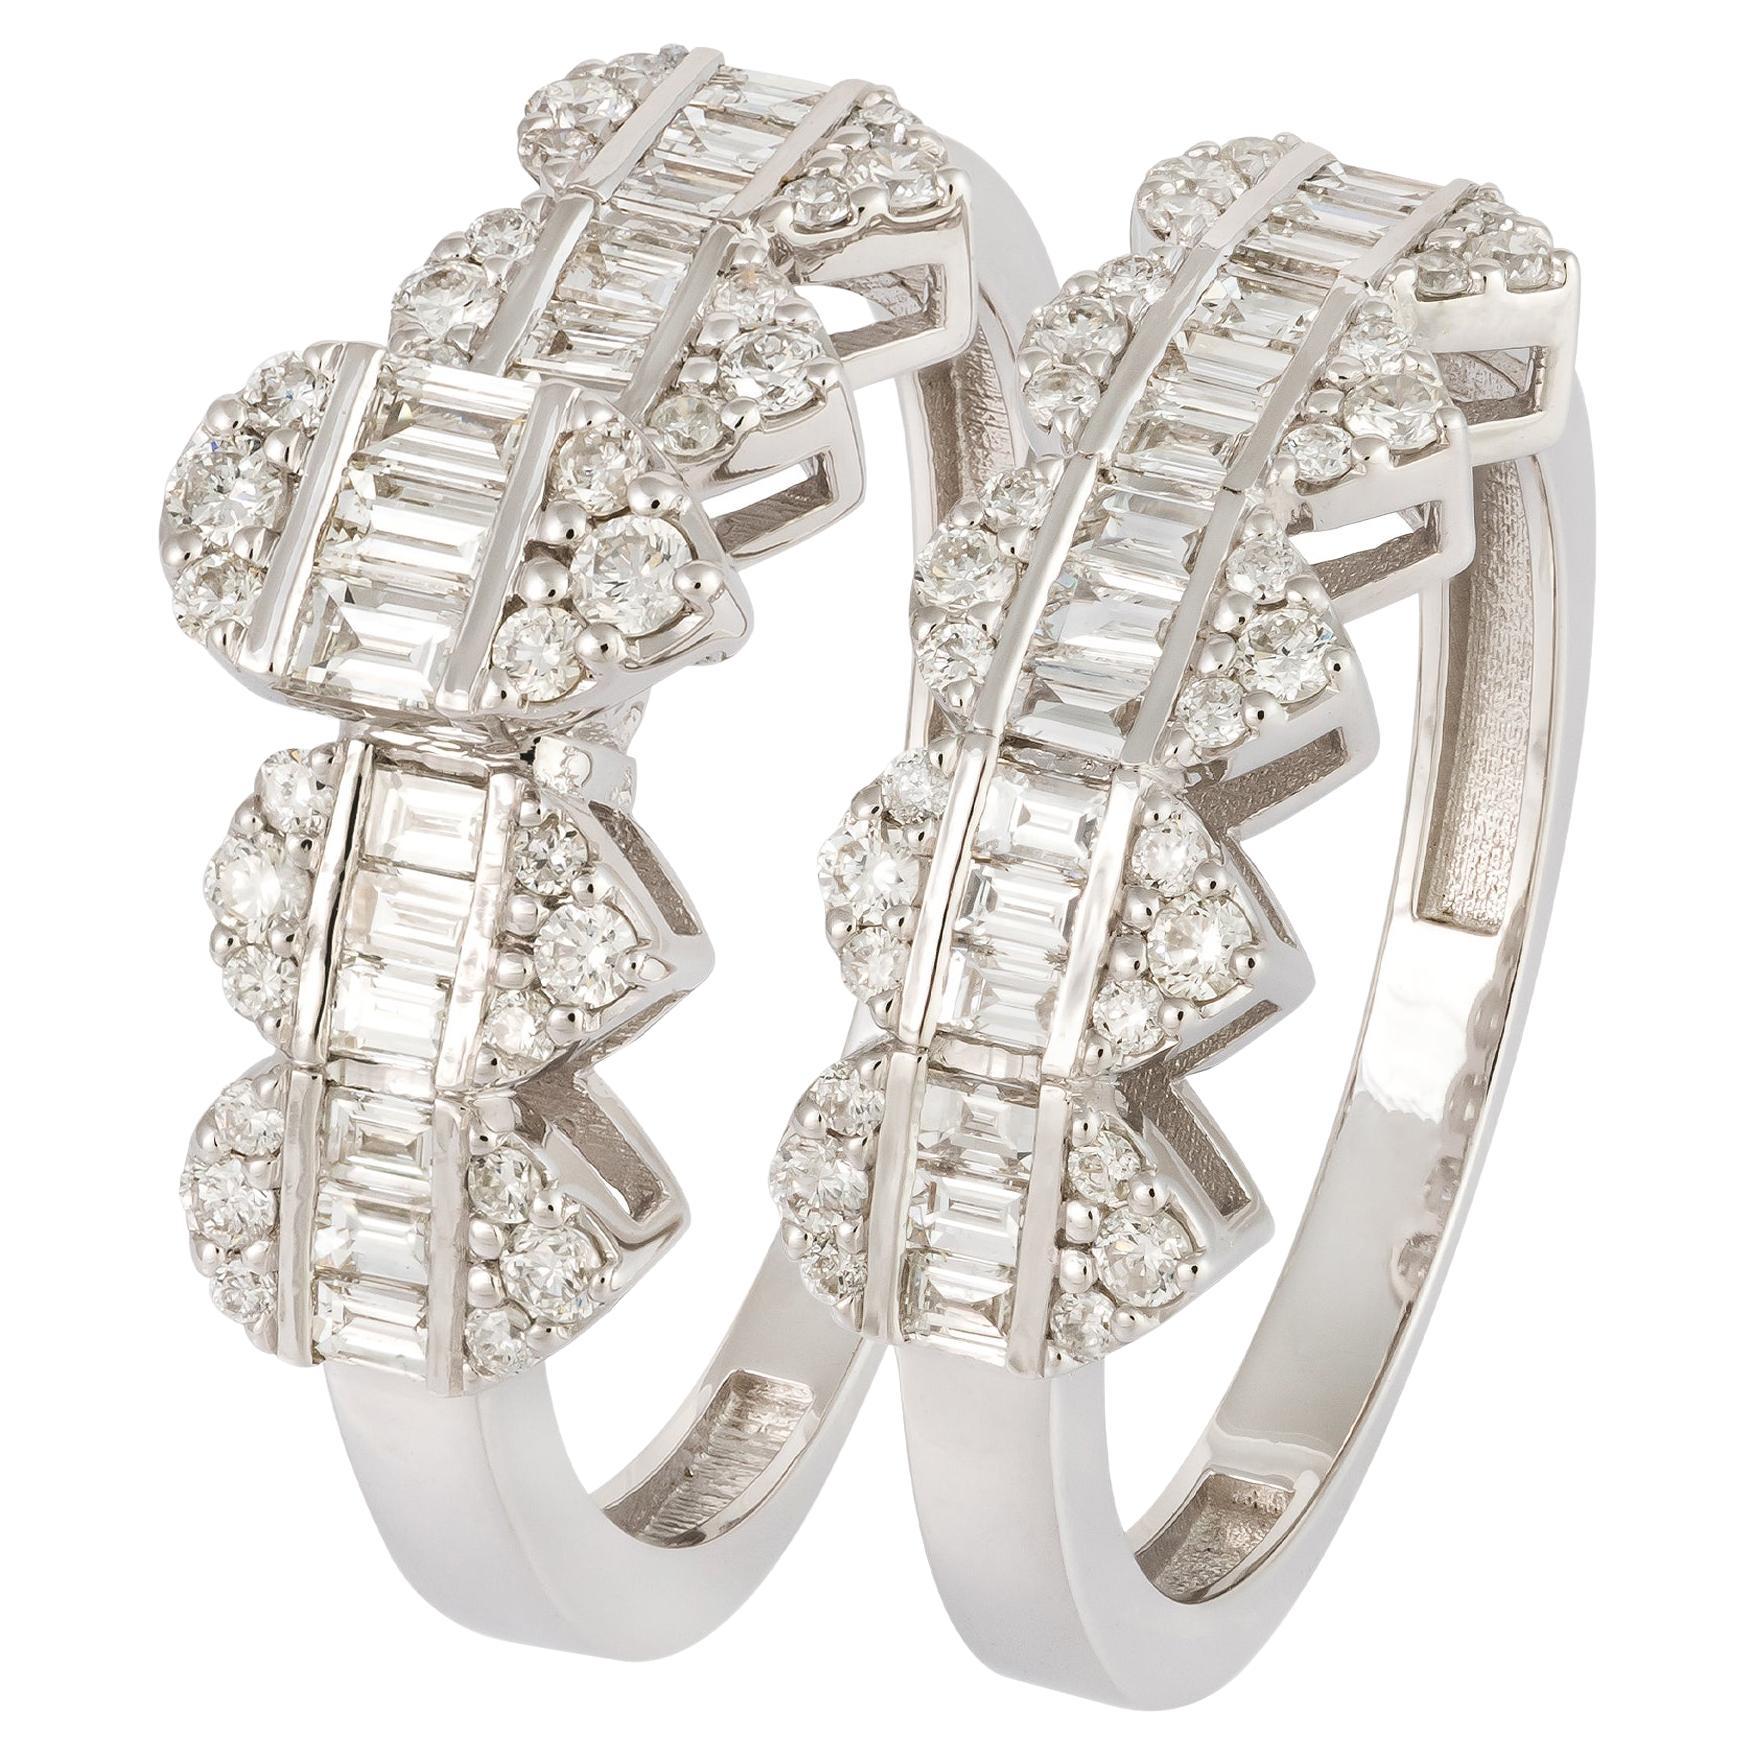 For Sale:  Stunning White 18K Gold White Diamond Ring For Her